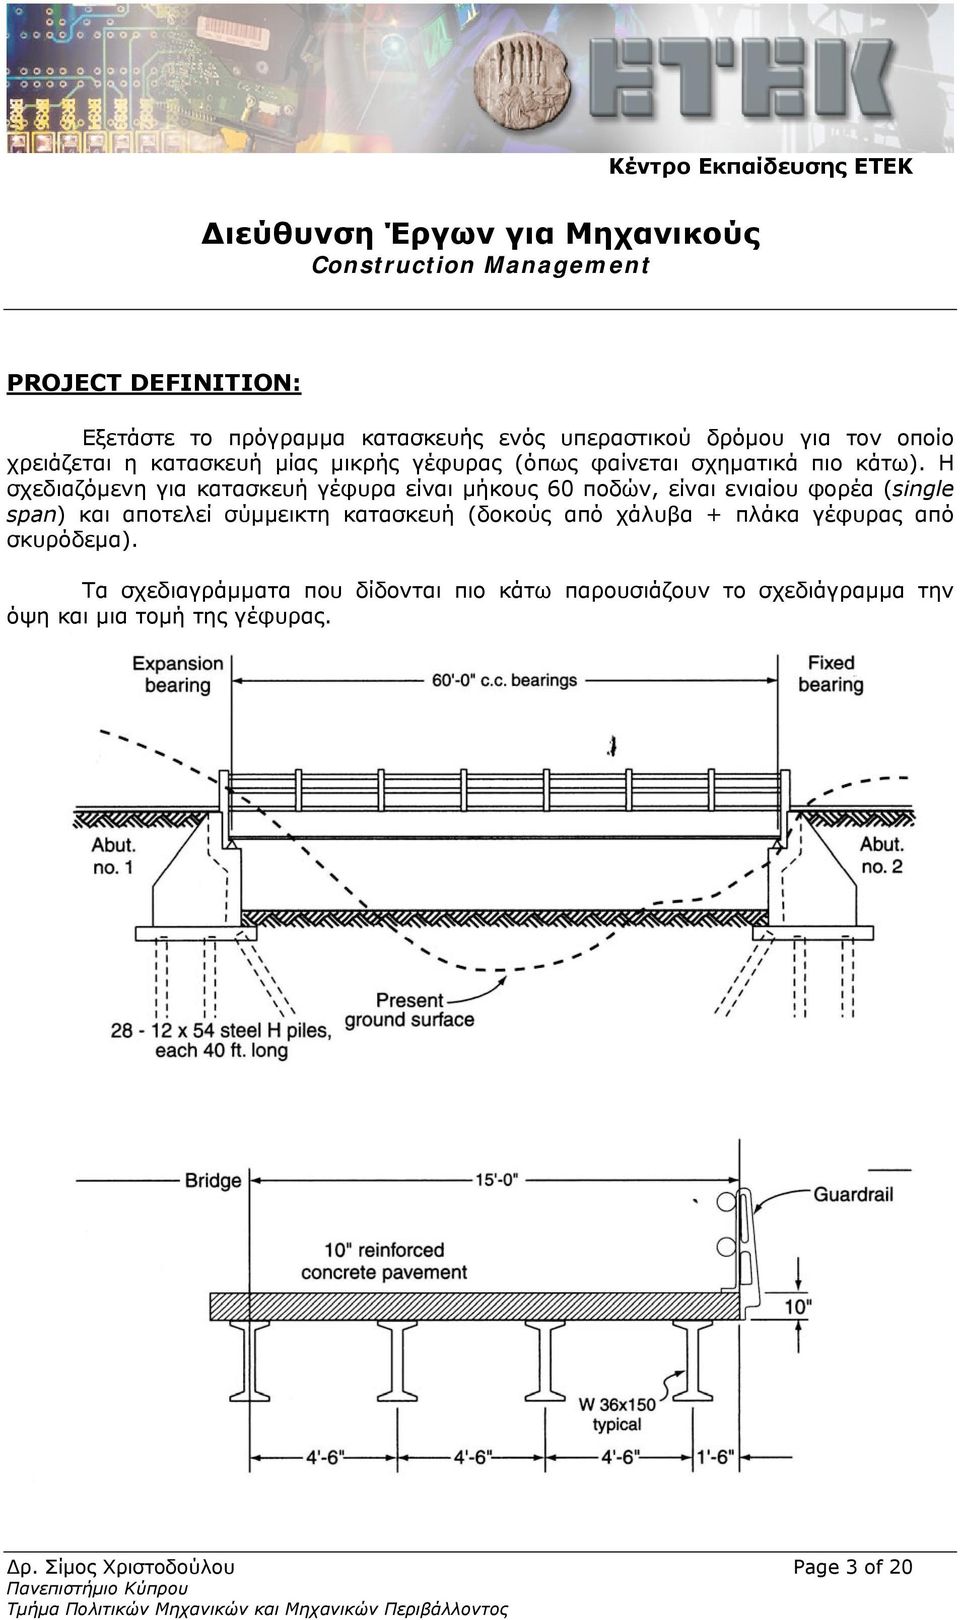 Η σχεδιαζόμενη για κατασκευή γέφυρα είναι μήκους 60 ποδών, είναι ενιαίου φορέα (single span) και αποτελεί σύμμεικτη